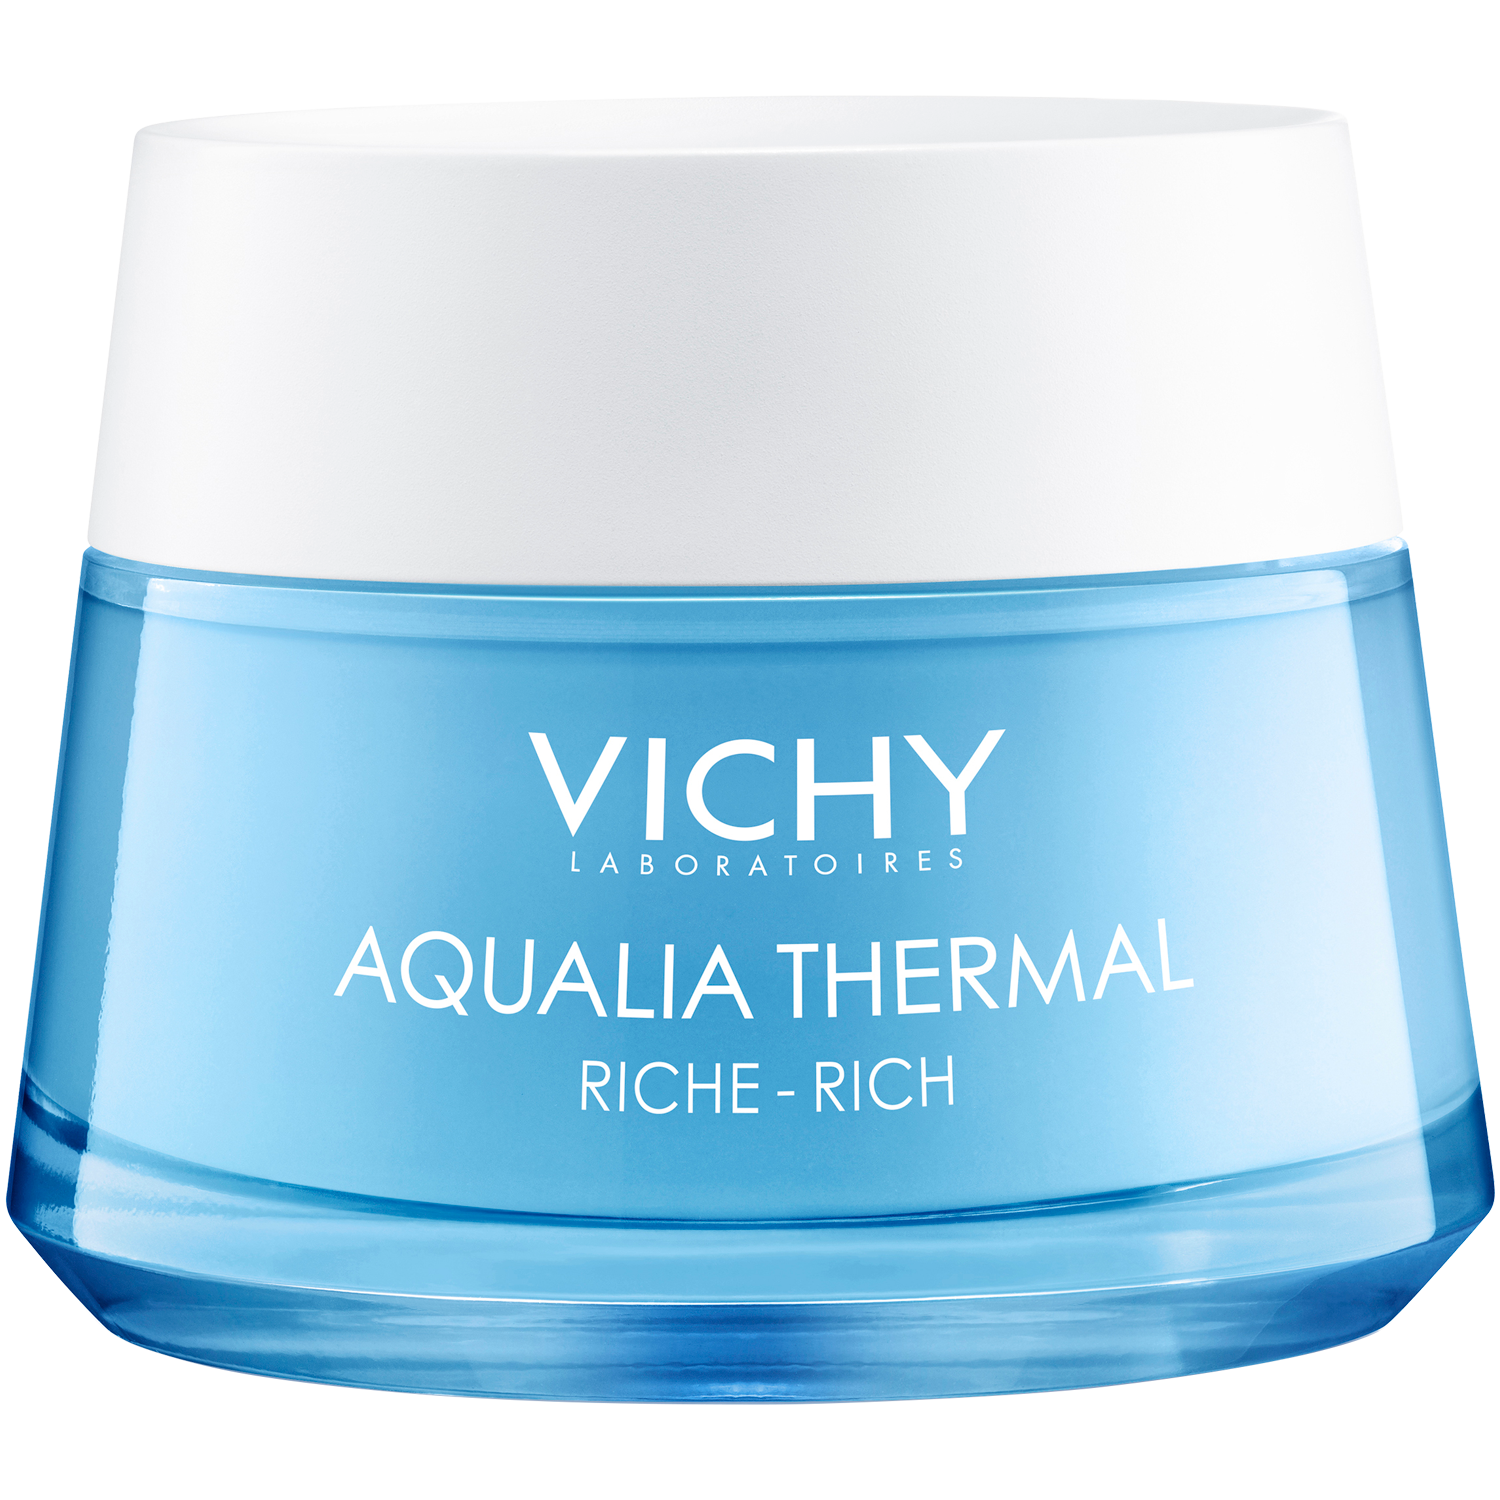 Vichy Aqualia Thermal odżywczy krem nawilżający do skóry suchej i bardzo  suchej, 50 ml | hebe.pl